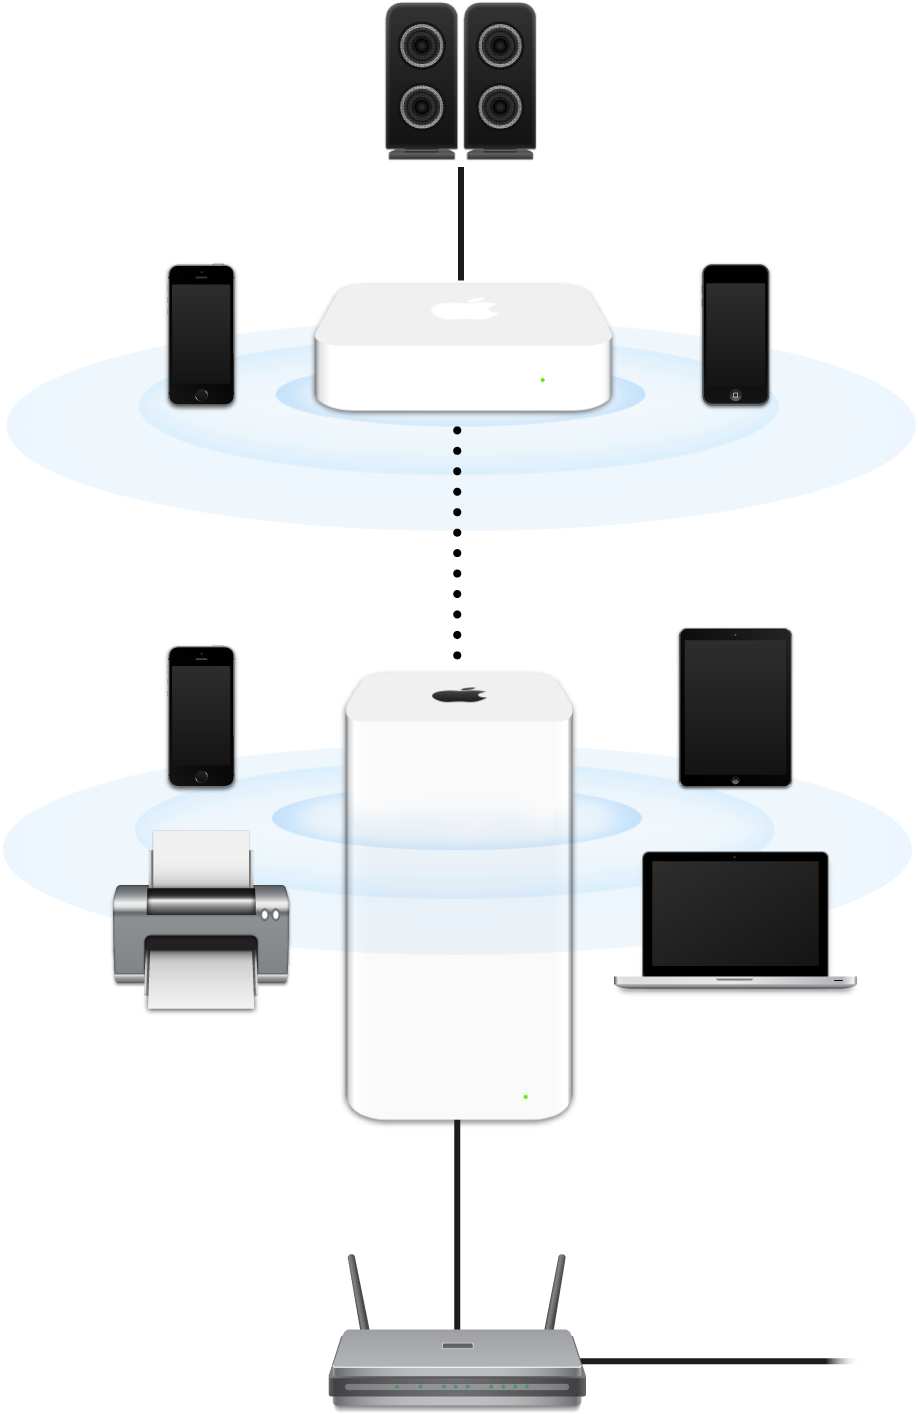 Uma rede ampliada, incluindo um AirPort Extreme e AirPort Express, conectada a um modem e transmitindo para diversos dispositivos.